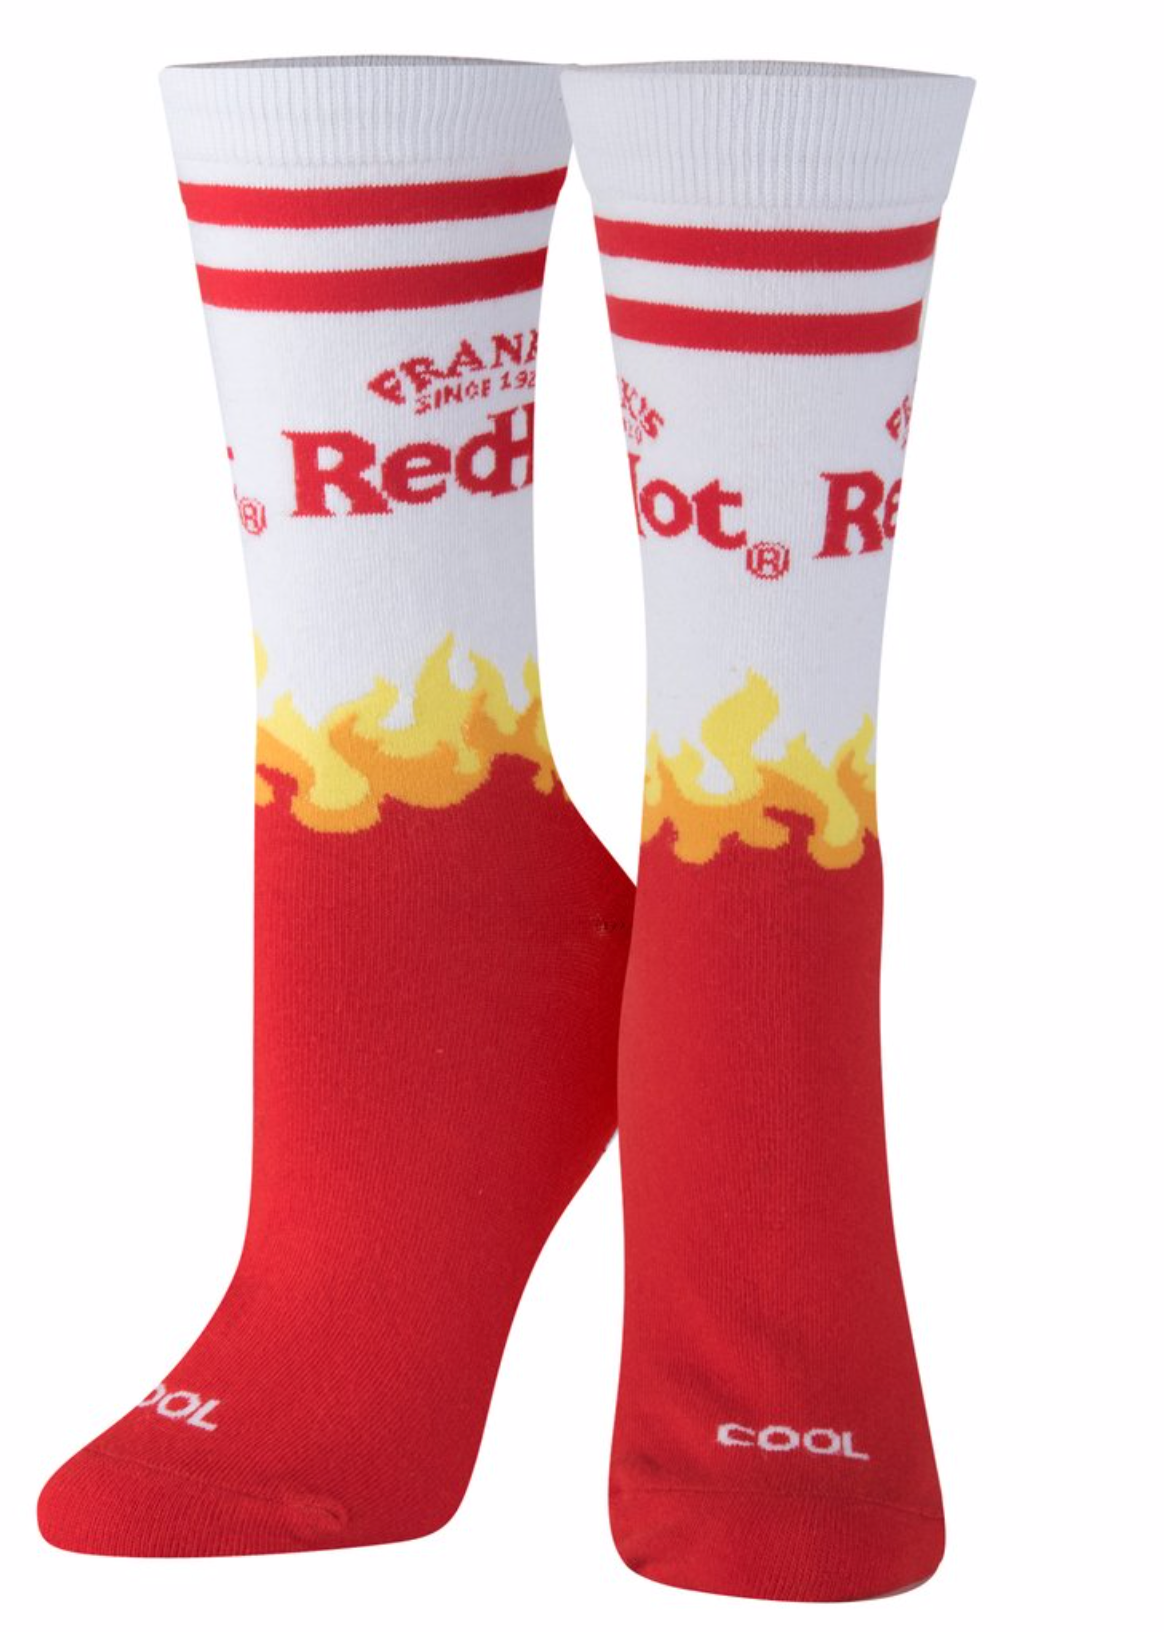 Franks Red Hot Hotsauce Socks